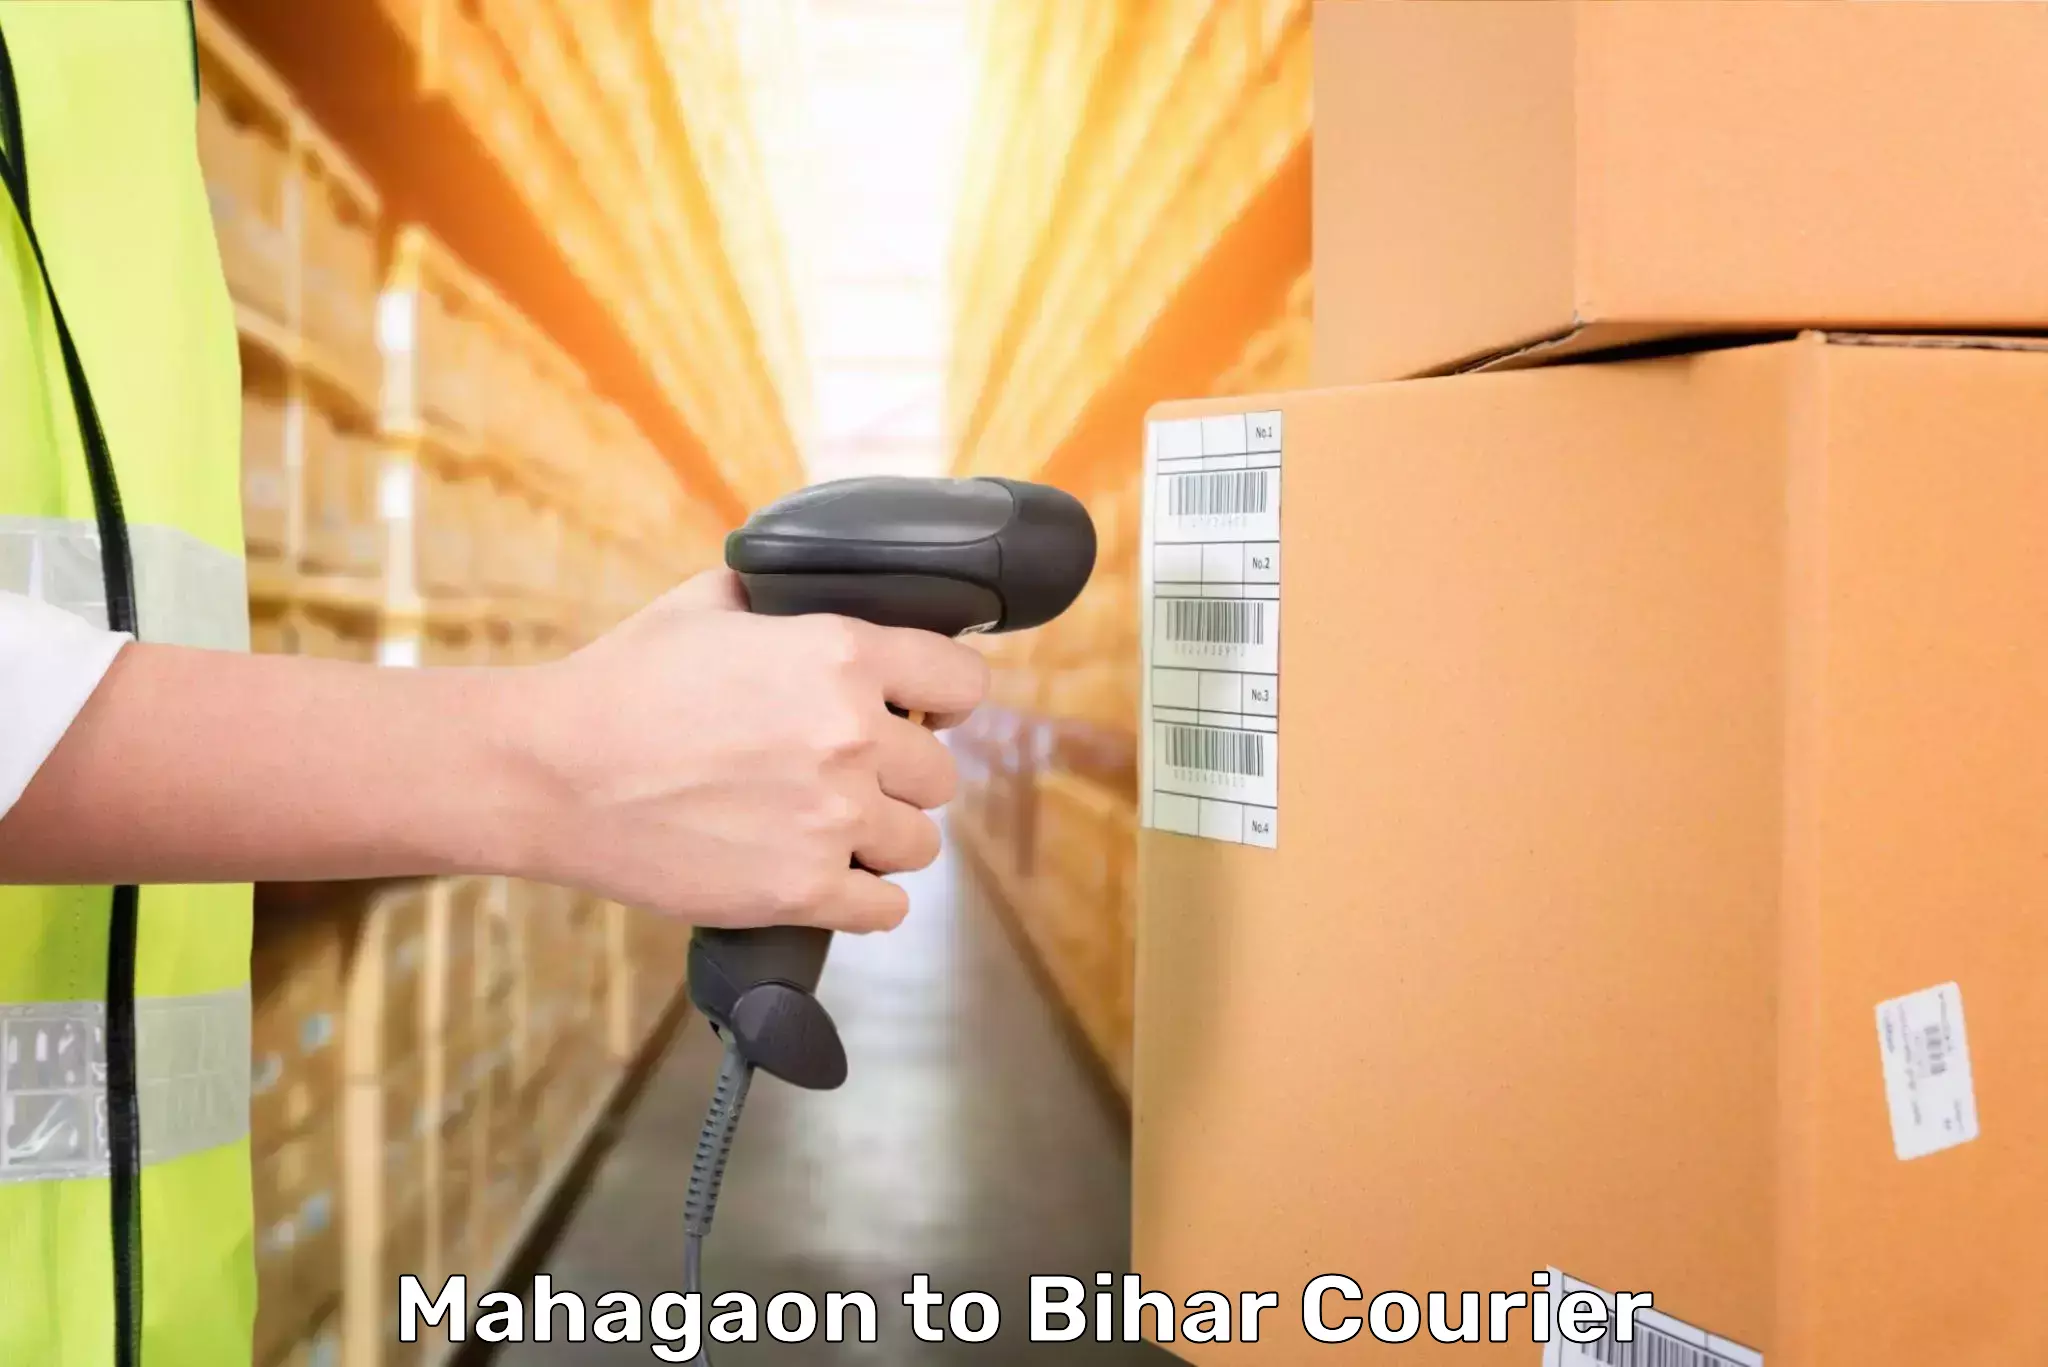 Baggage shipping service Mahagaon to Bharwara